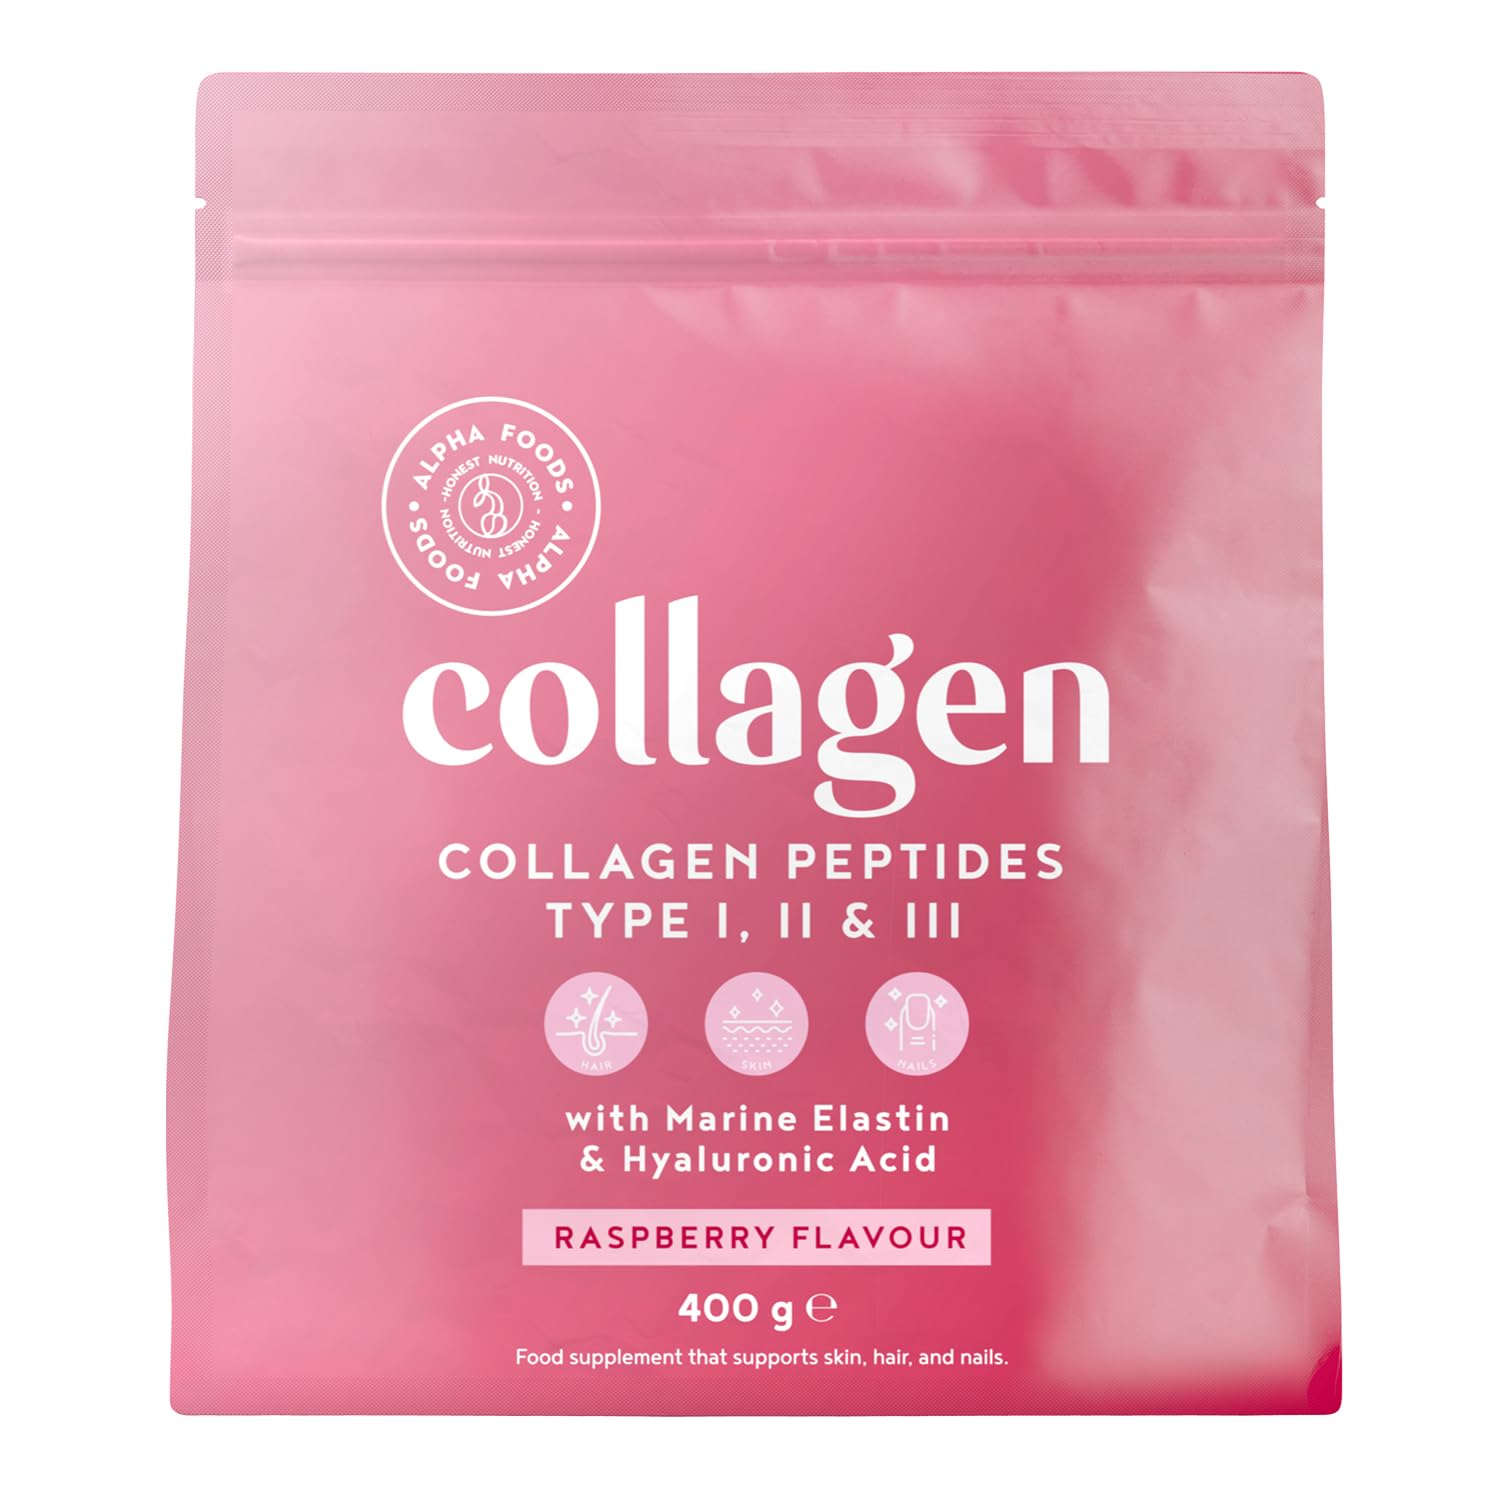 Alpha Foods Collagen Pulver (400g) - Kollagen Hydrolysat Peptide Type I, II & III - Hochdosiert Kollagenpulver mit Hyaluronsäure und Elastin - Himbeergeschmack - Aus Deutschland